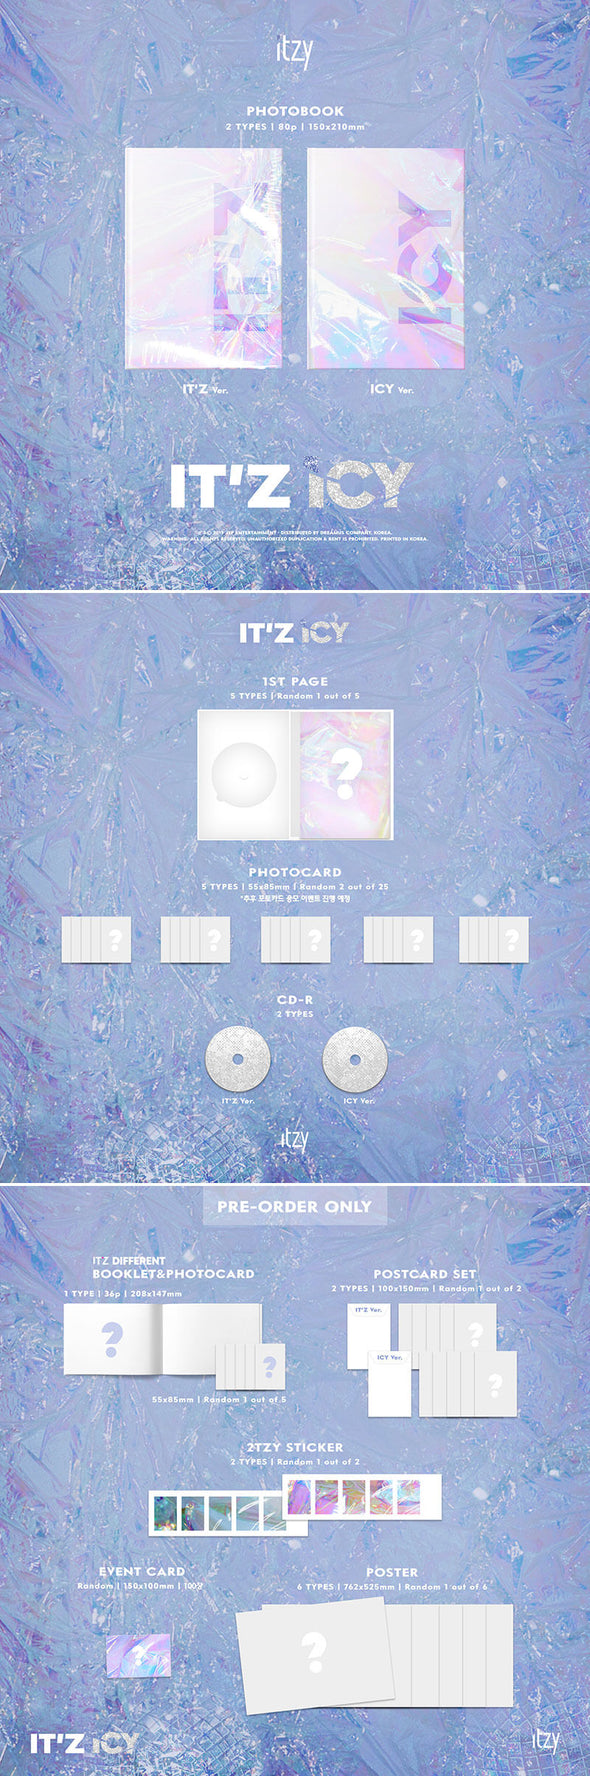 ITZY - 'IT'z ICY' Album